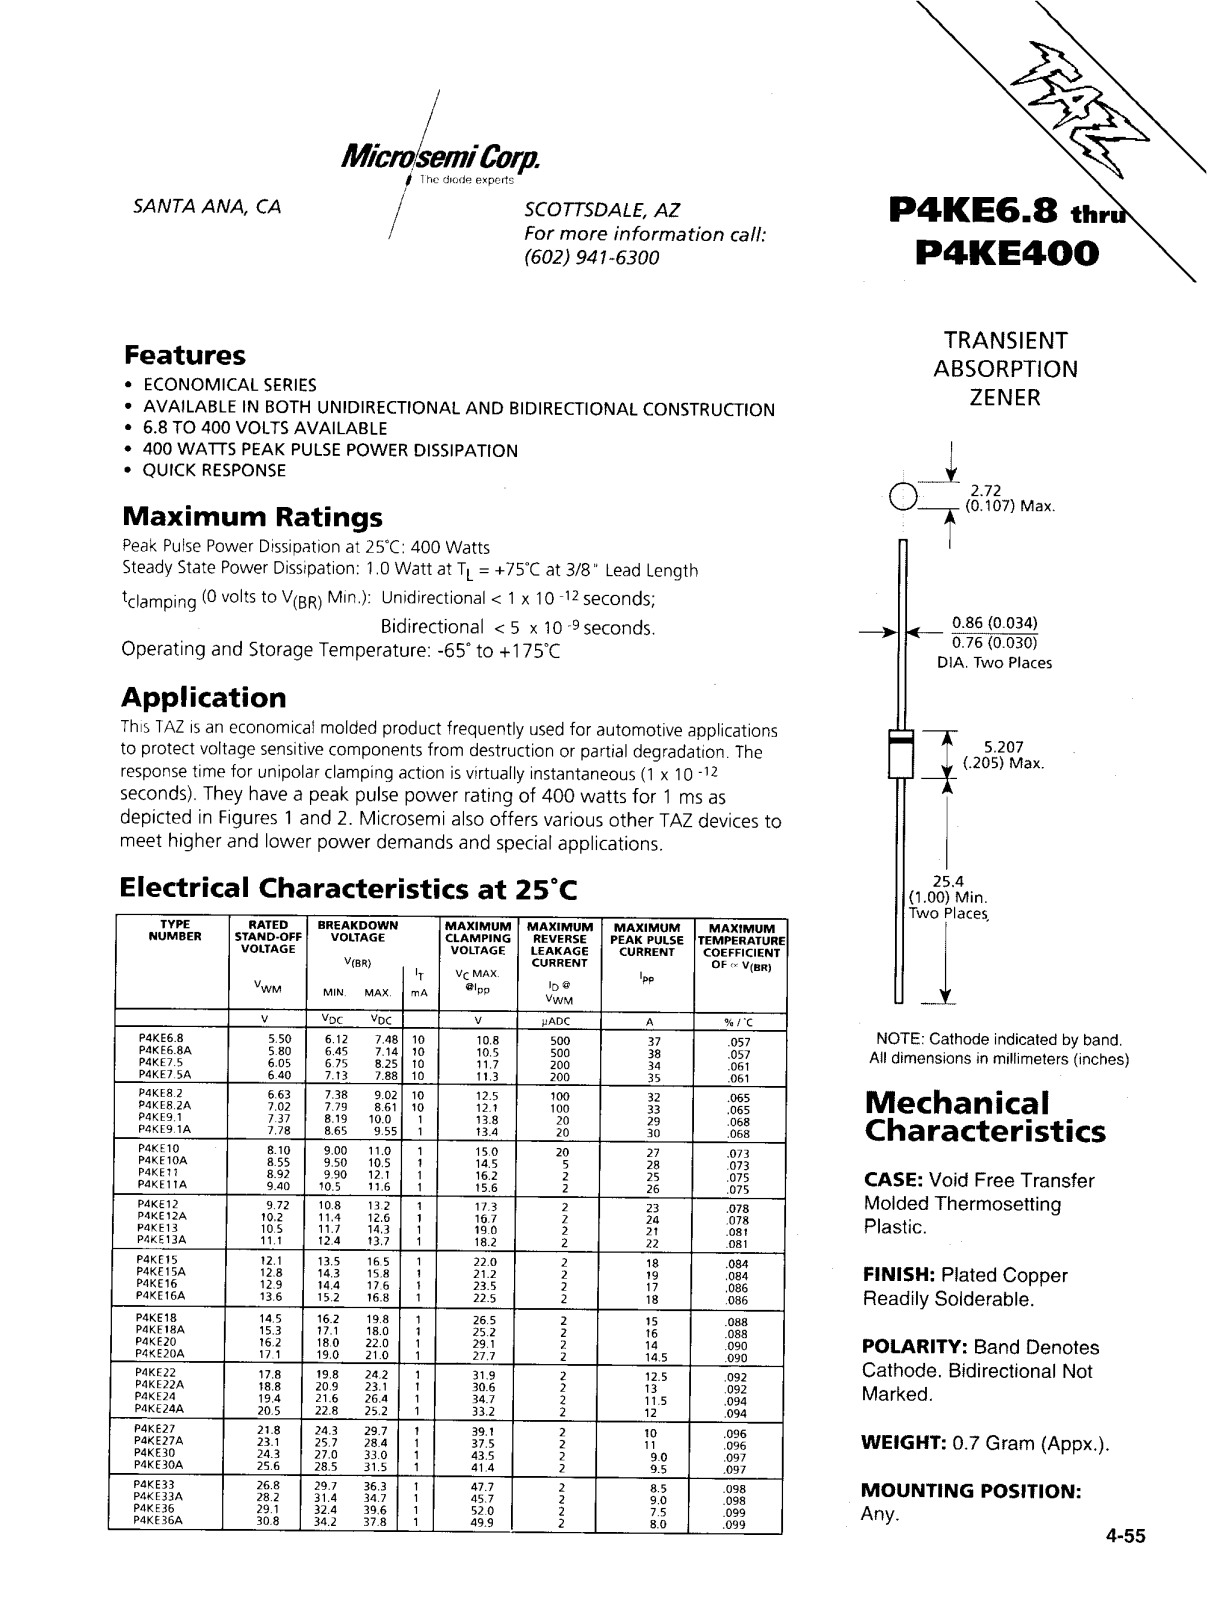 Microsemi Corporation P4KE100C, P4KE110, P4KE11A, P4KE12A, P4KE120C Datasheet